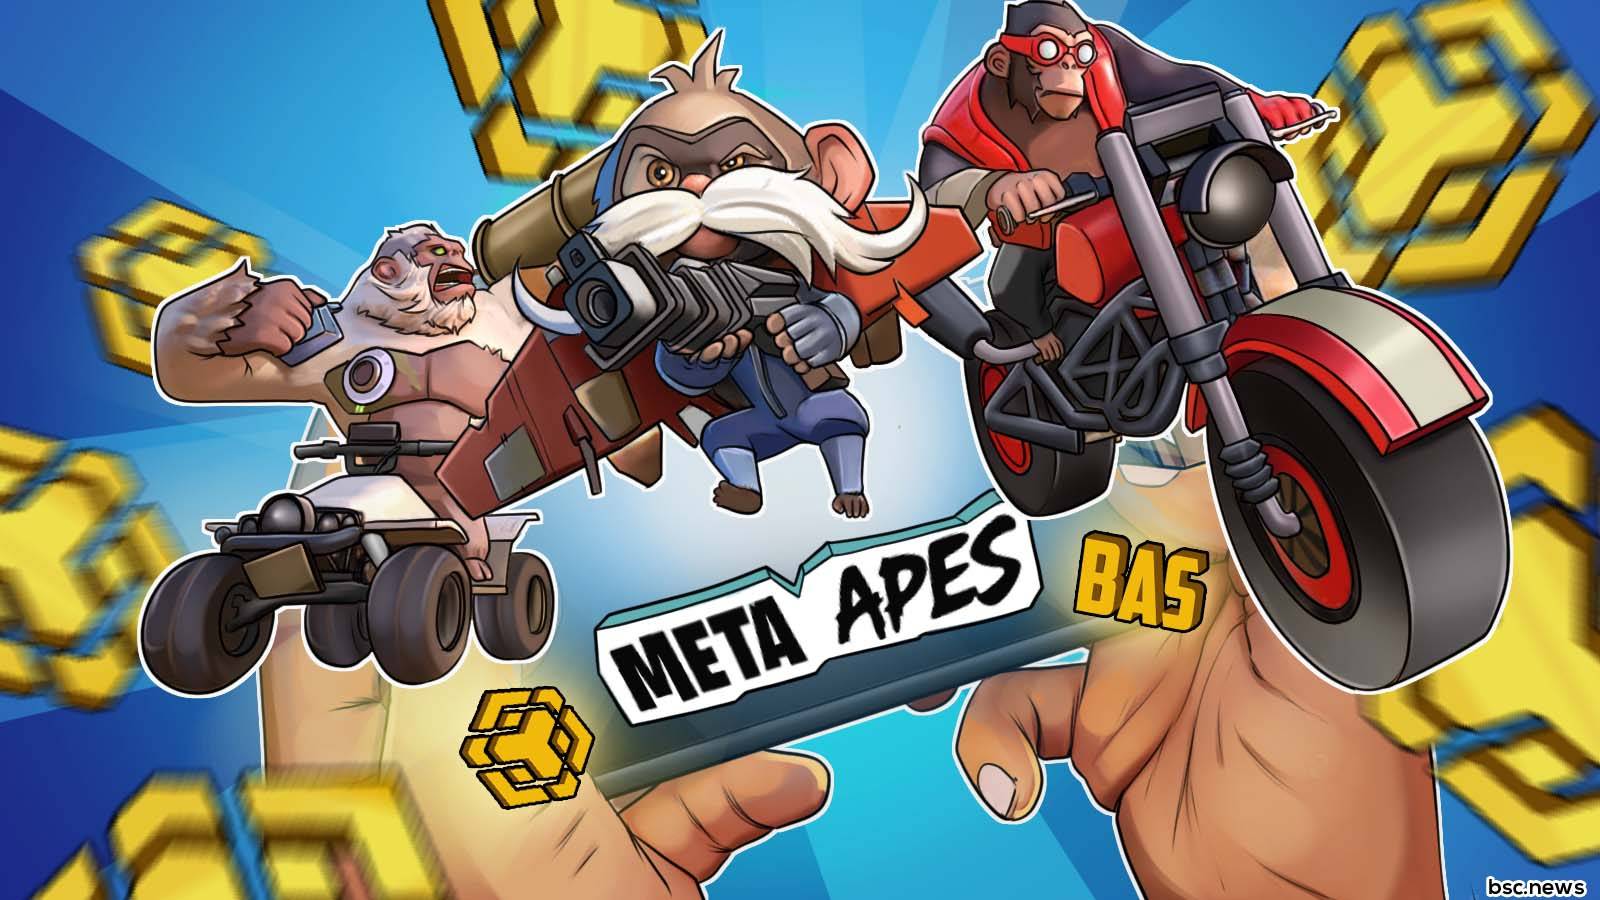 Meta Apes - Game Review